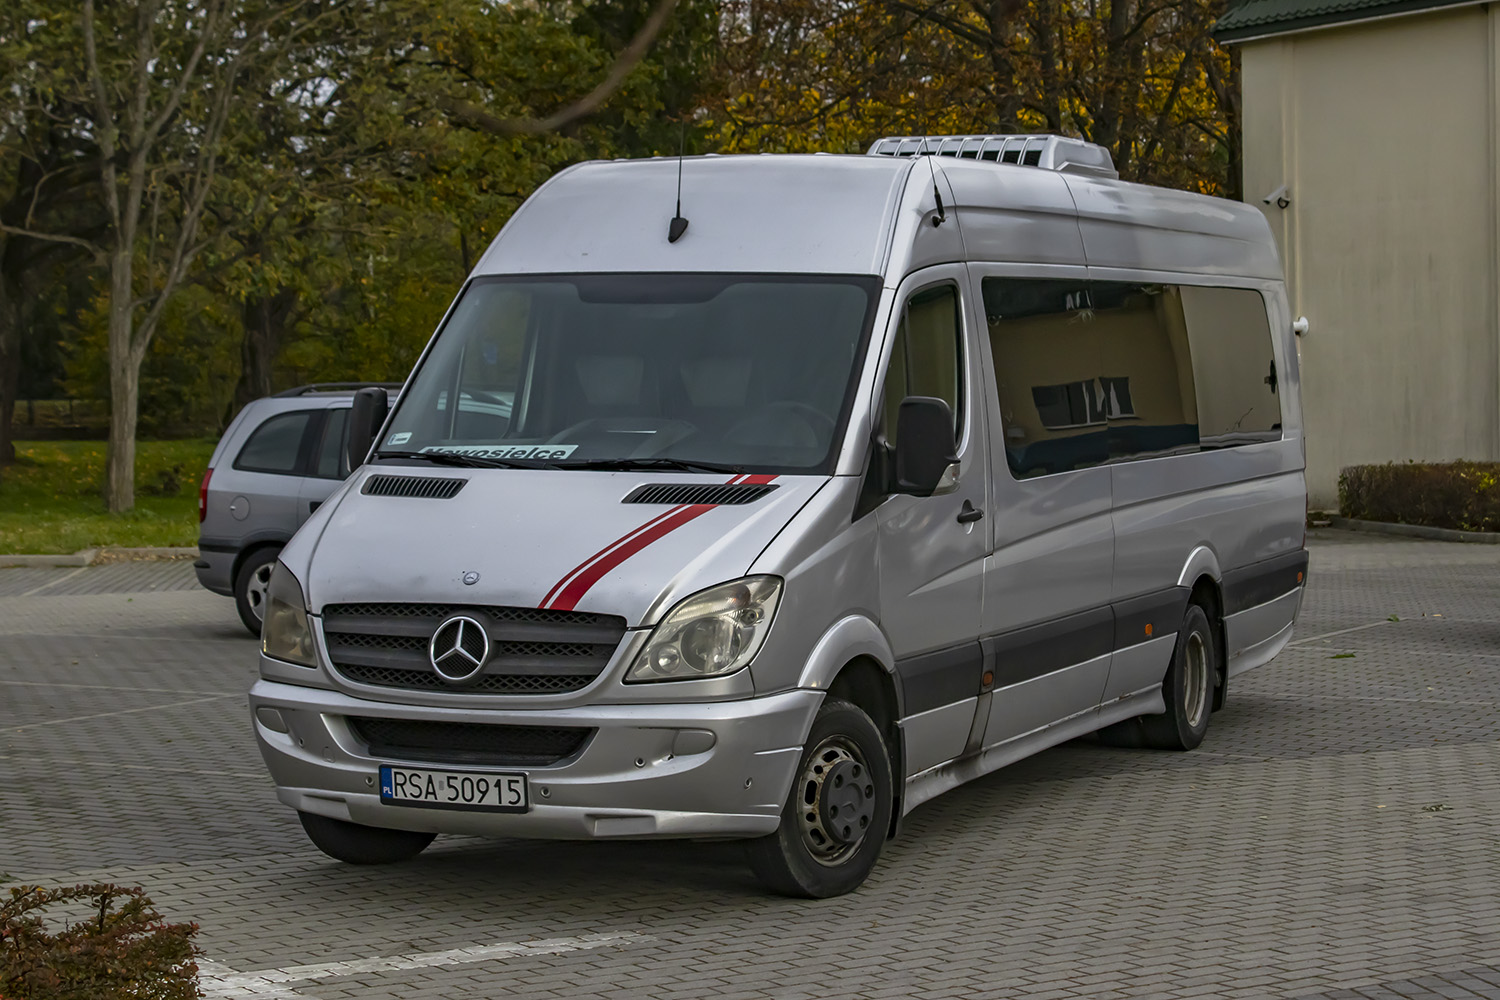 Mercedes-Benz 515 CDI / Automet #RSA 50915